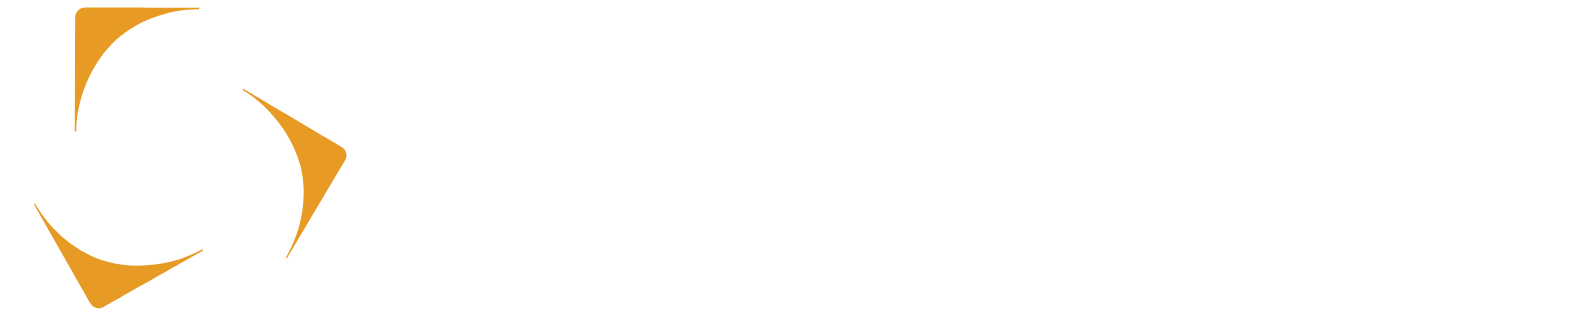 Kazatomprom logo grand pour les fonds sombres (PNG transparent)